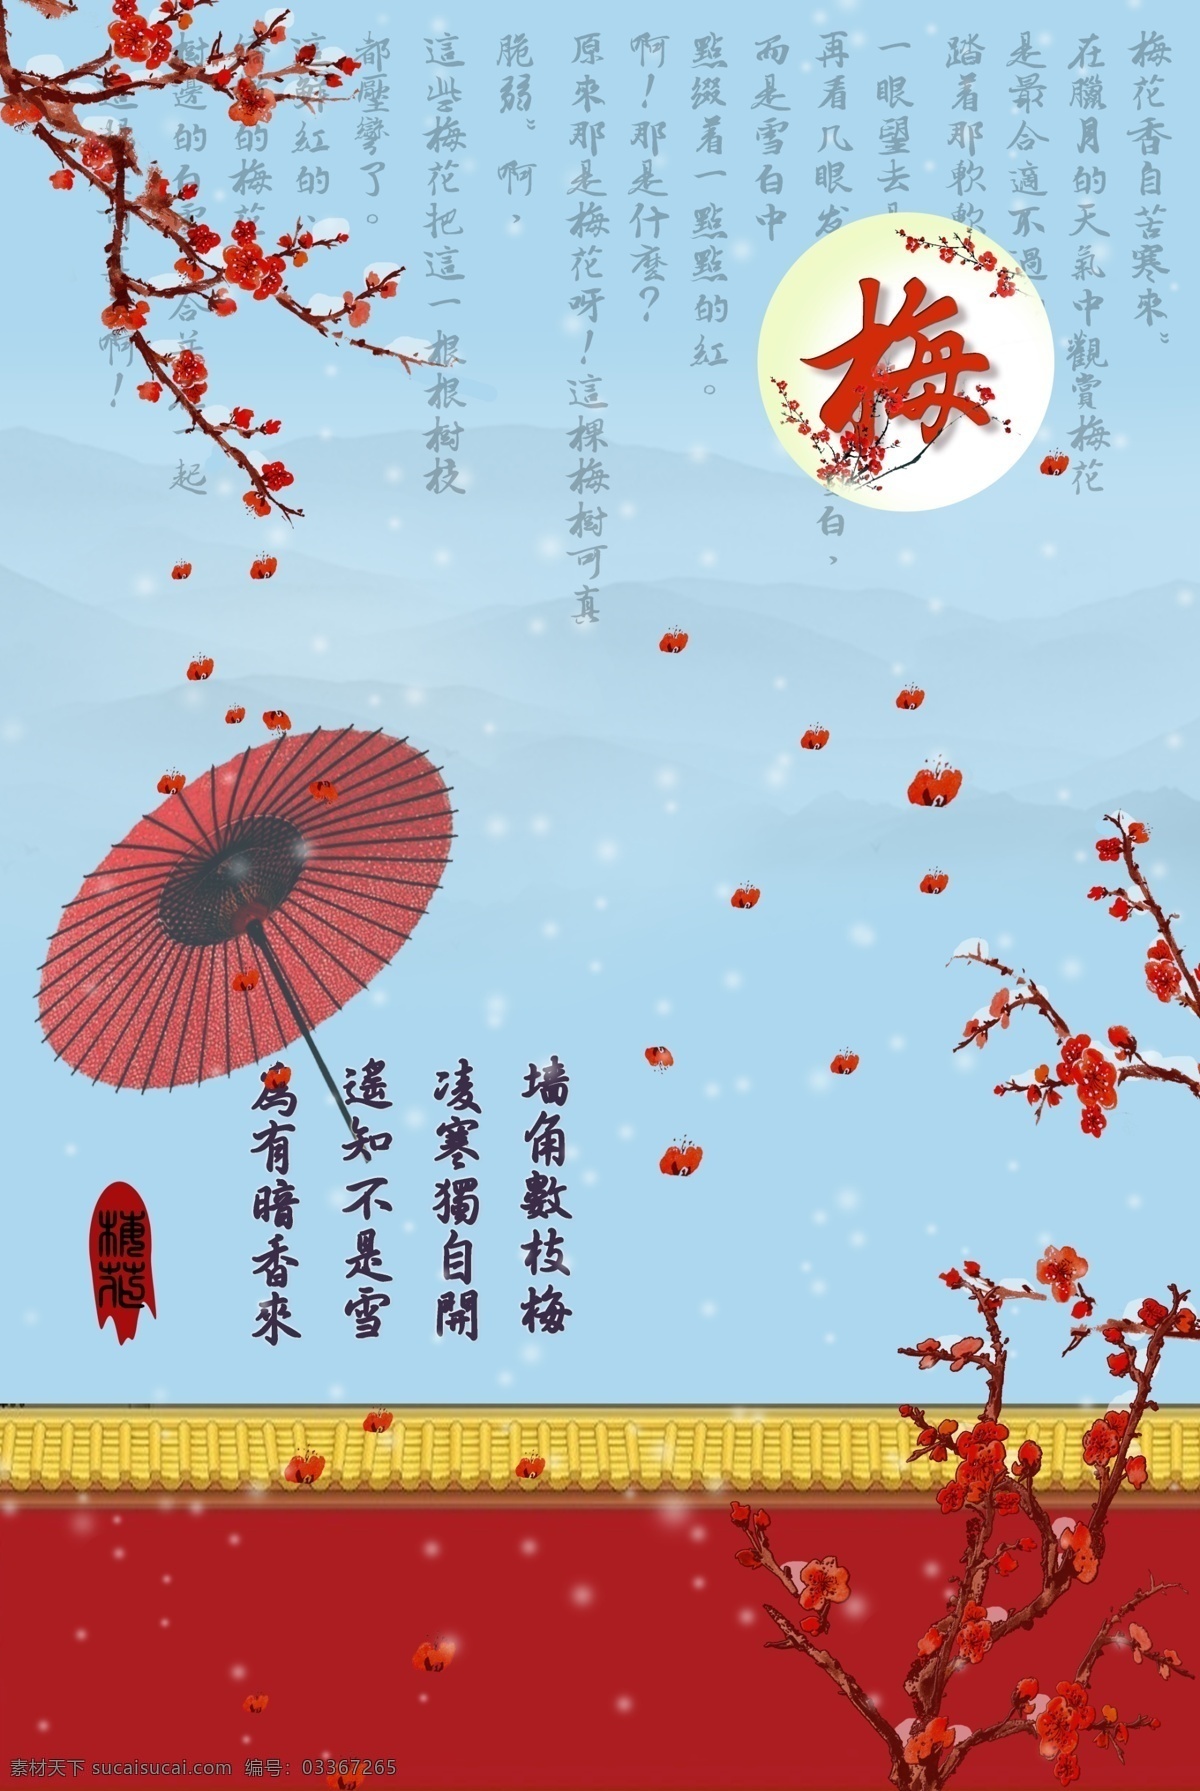 梅花香自苦寒来 海报 下雪 城墙 古典 中国风 展板 梅花 梅 红伞